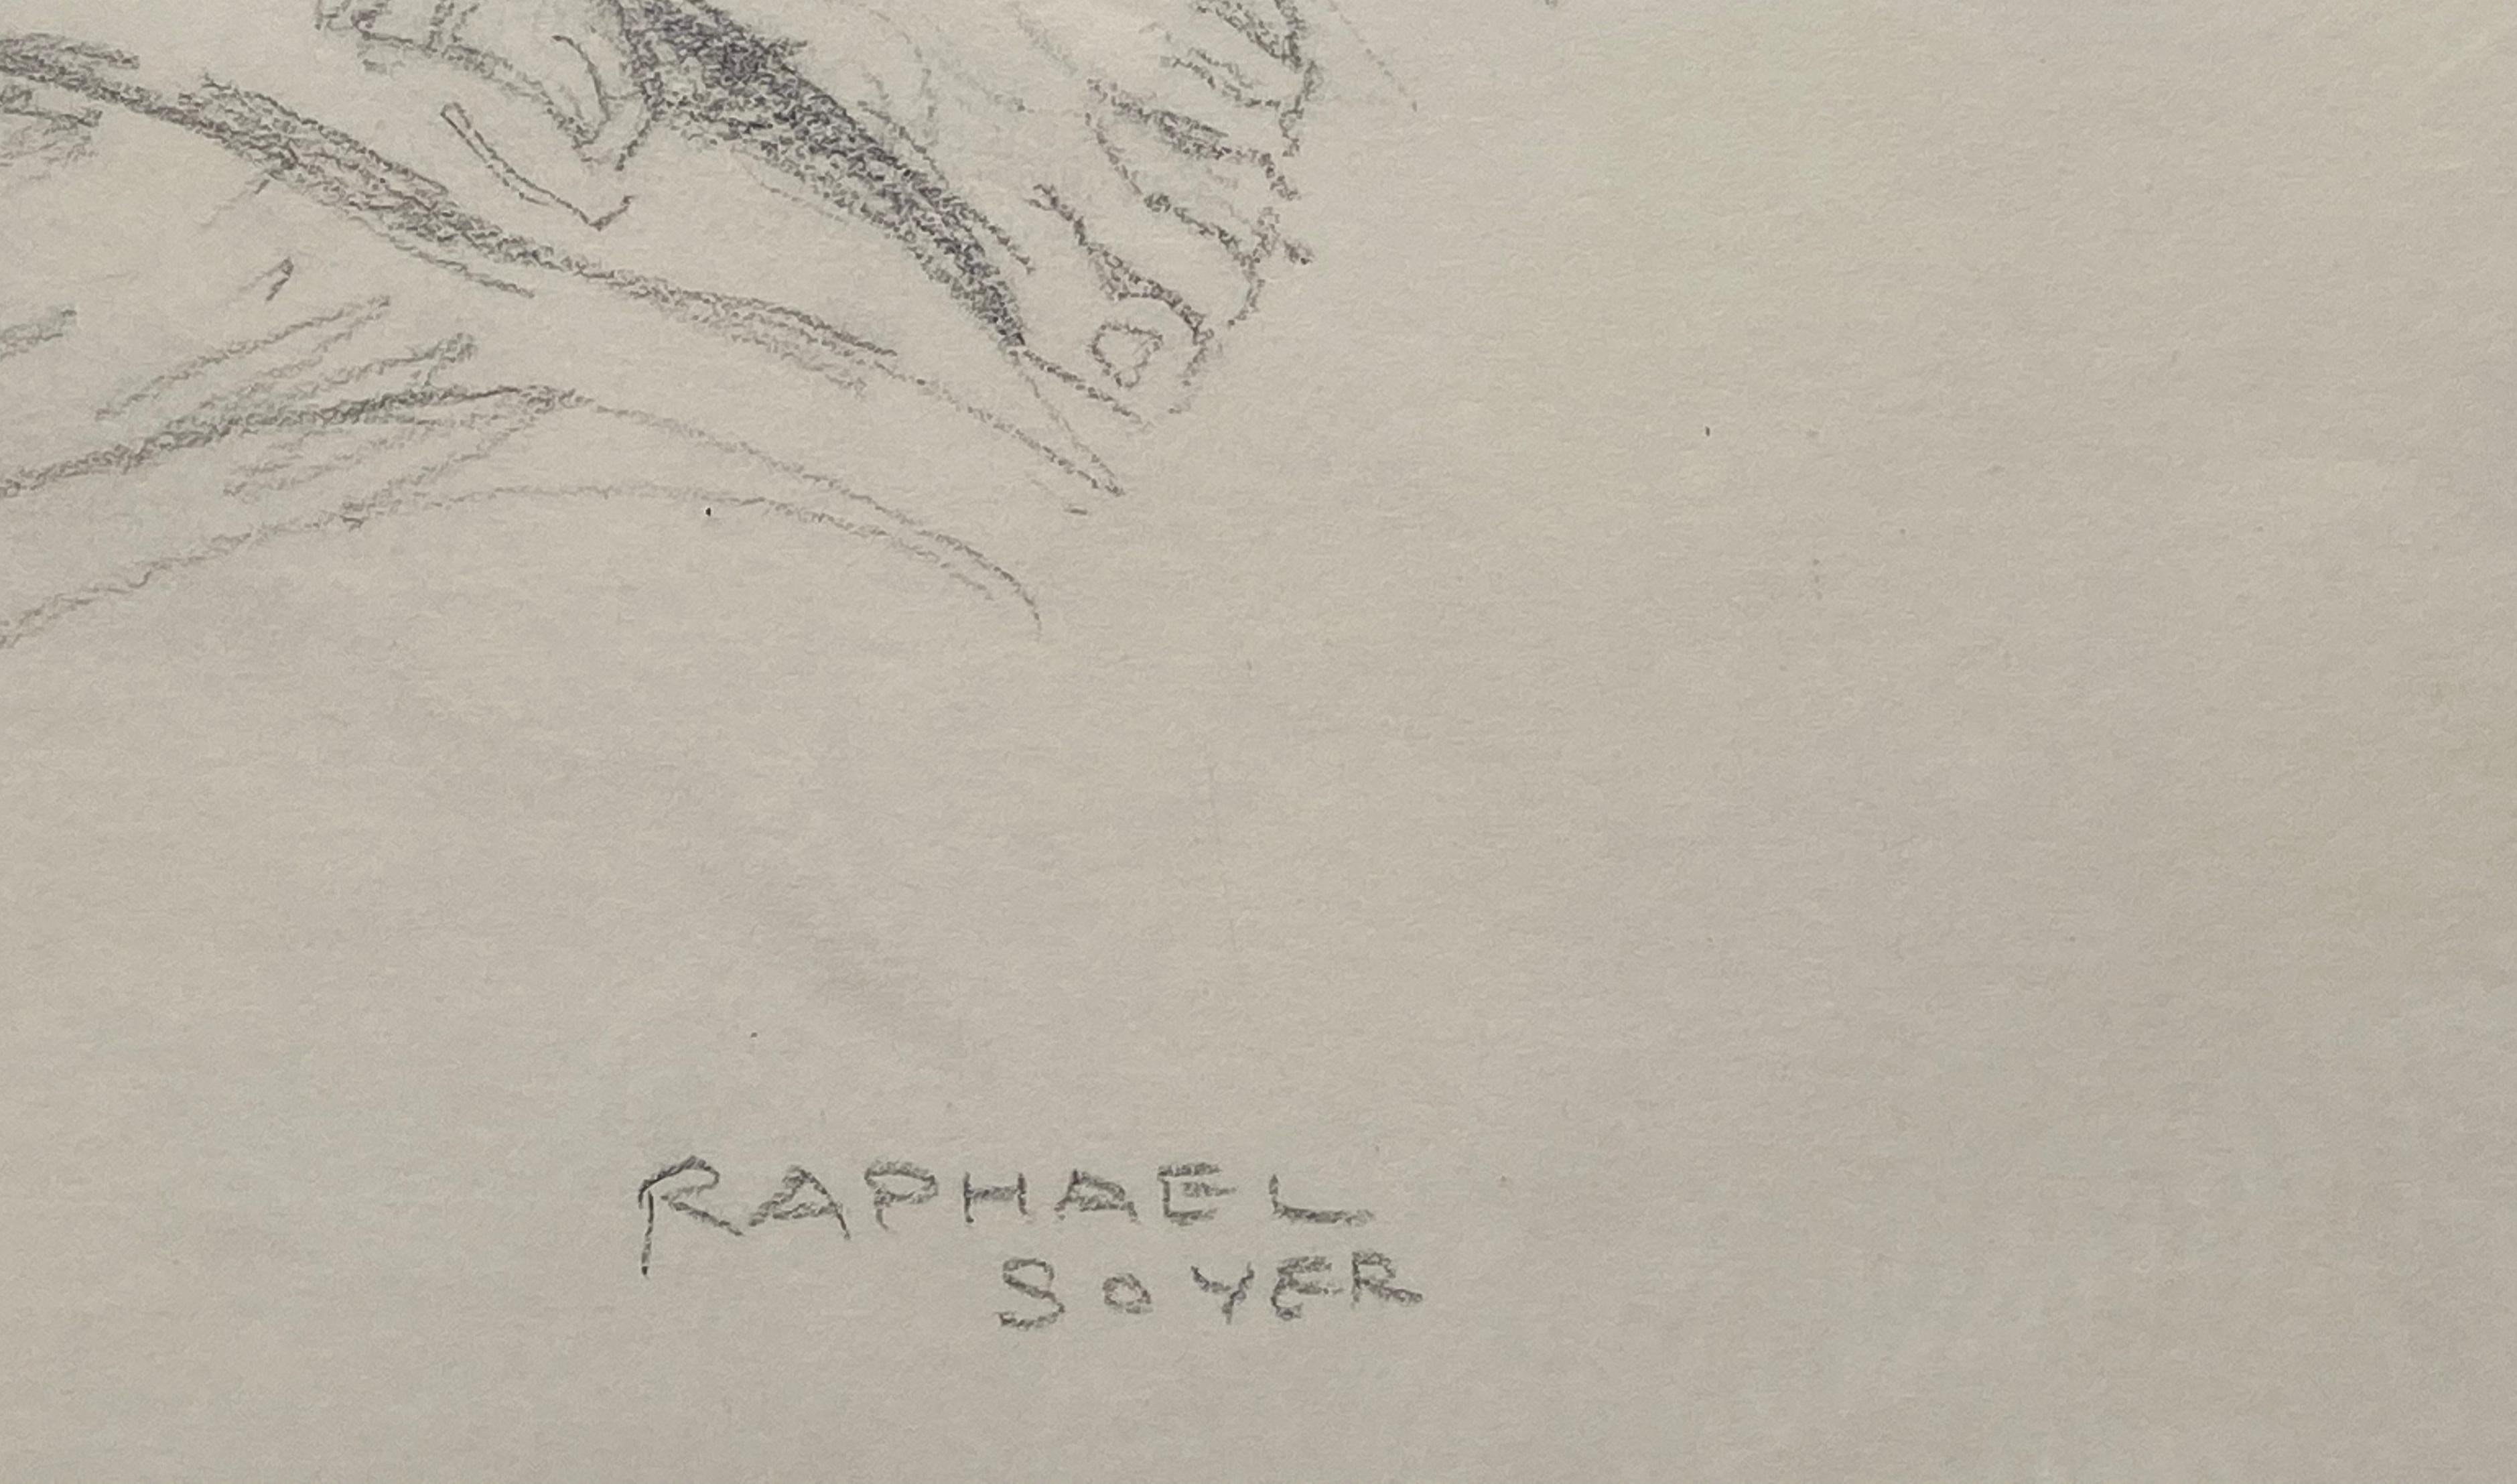 raphael grey naked